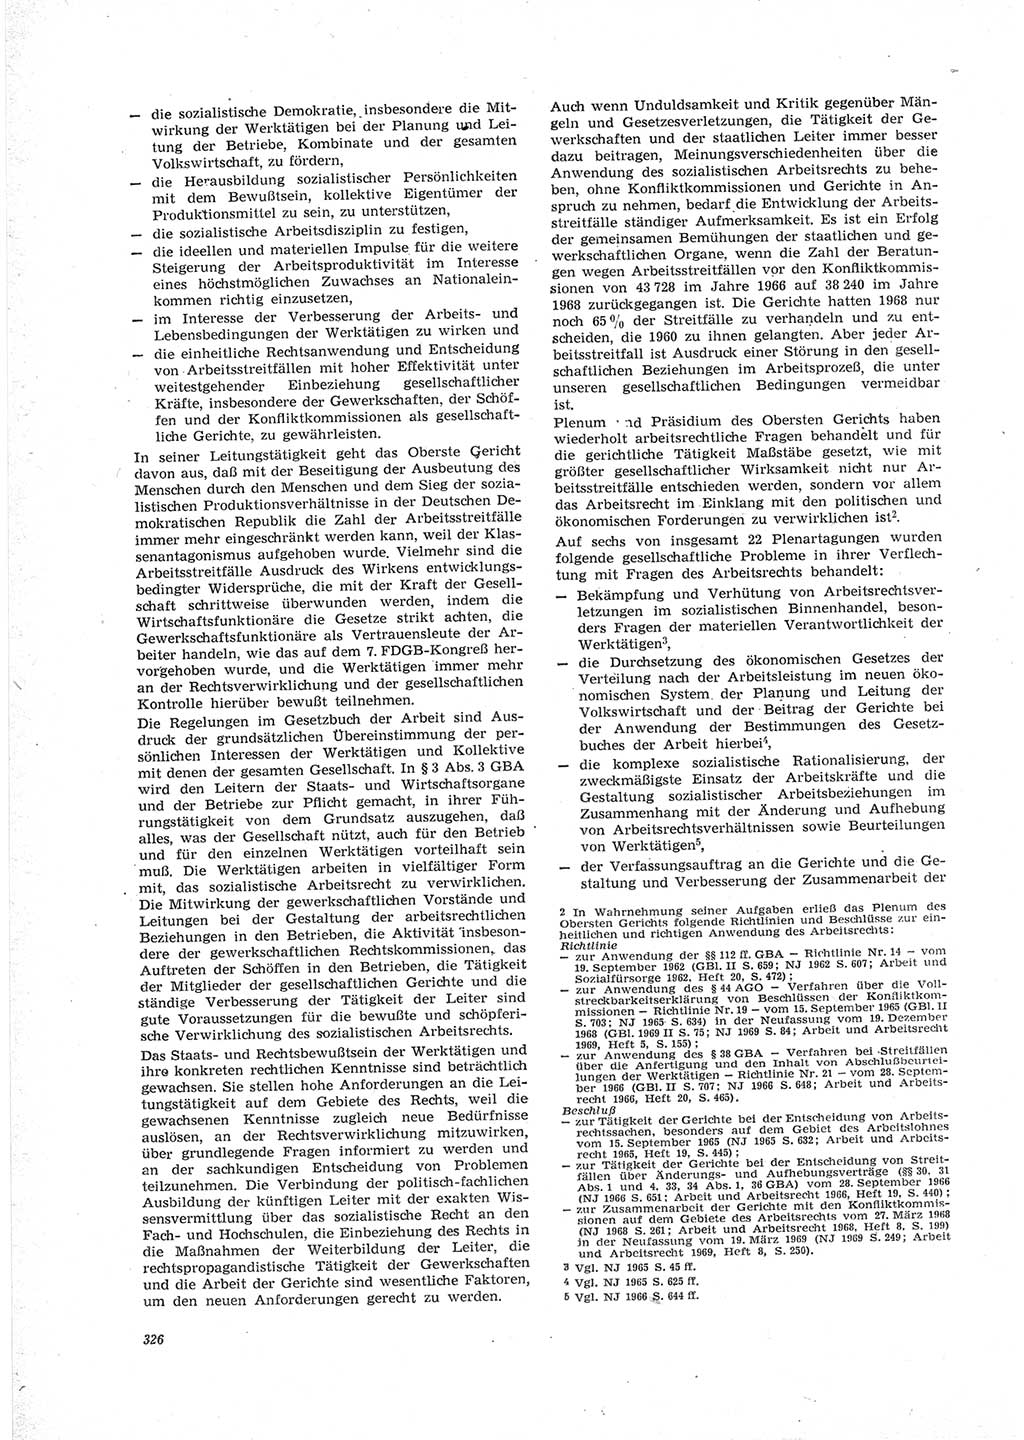 Neue Justiz (NJ), Zeitschrift für Recht und Rechtswissenschaft [Deutsche Demokratische Republik (DDR)], 23. Jahrgang 1969, Seite 326 (NJ DDR 1969, S. 326)